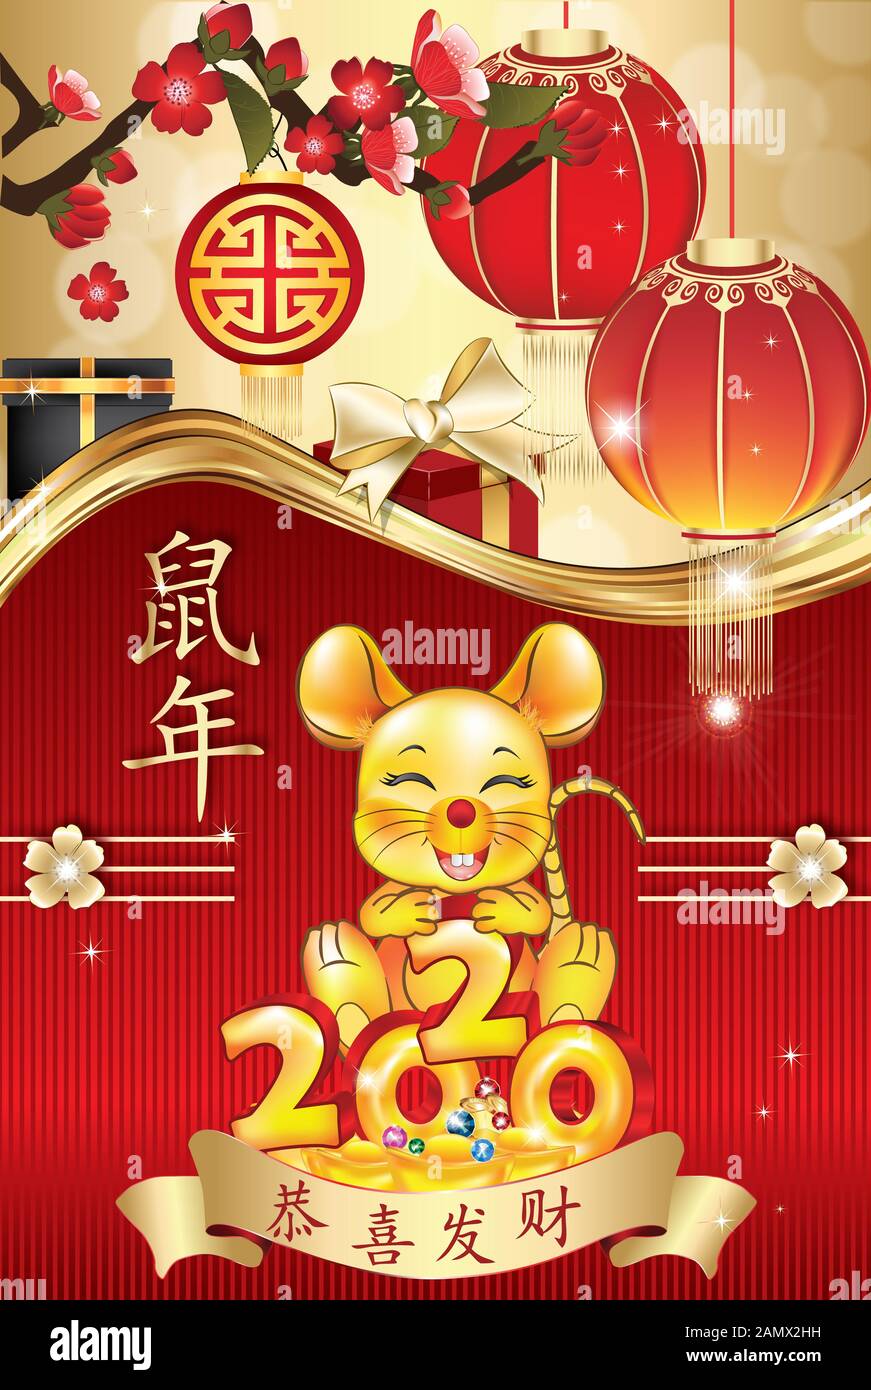 Red greeting card - Felice Anno Nuovo Cinese del ratto 2020! Ideogrammi traduzione: Gong Xi Fa Cai (congratulazioni e fare fortuna). Anno di ratto. Foto Stock